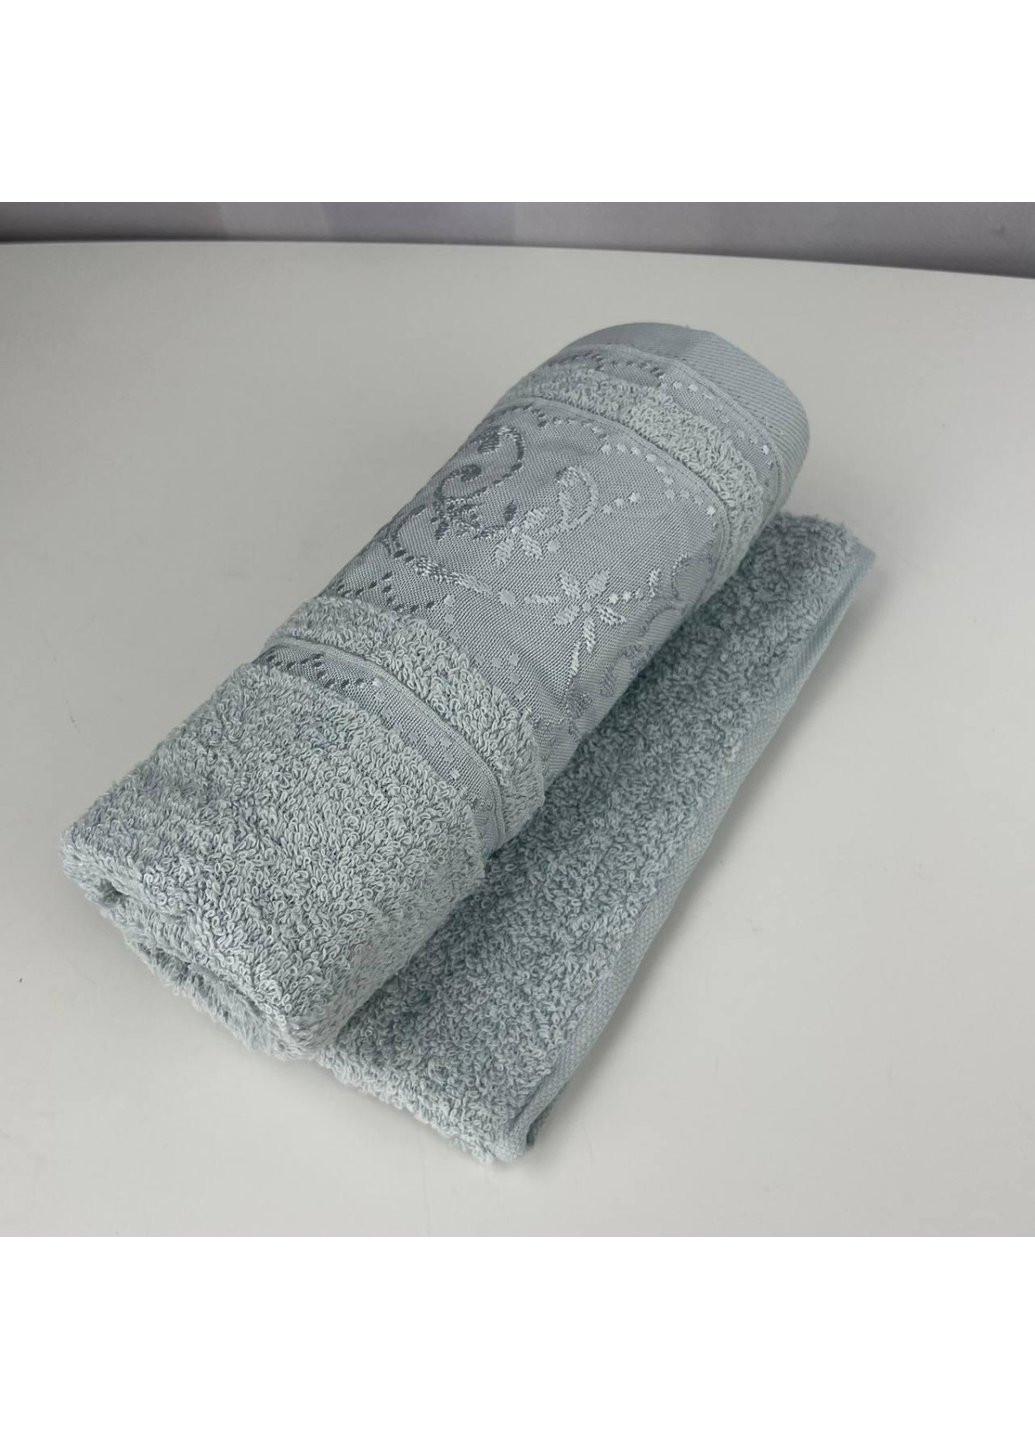 Power полотенце для лица махровое febo vip cotton ecre турция 6394 мятное 50х90 см комбинированный производство - Турция